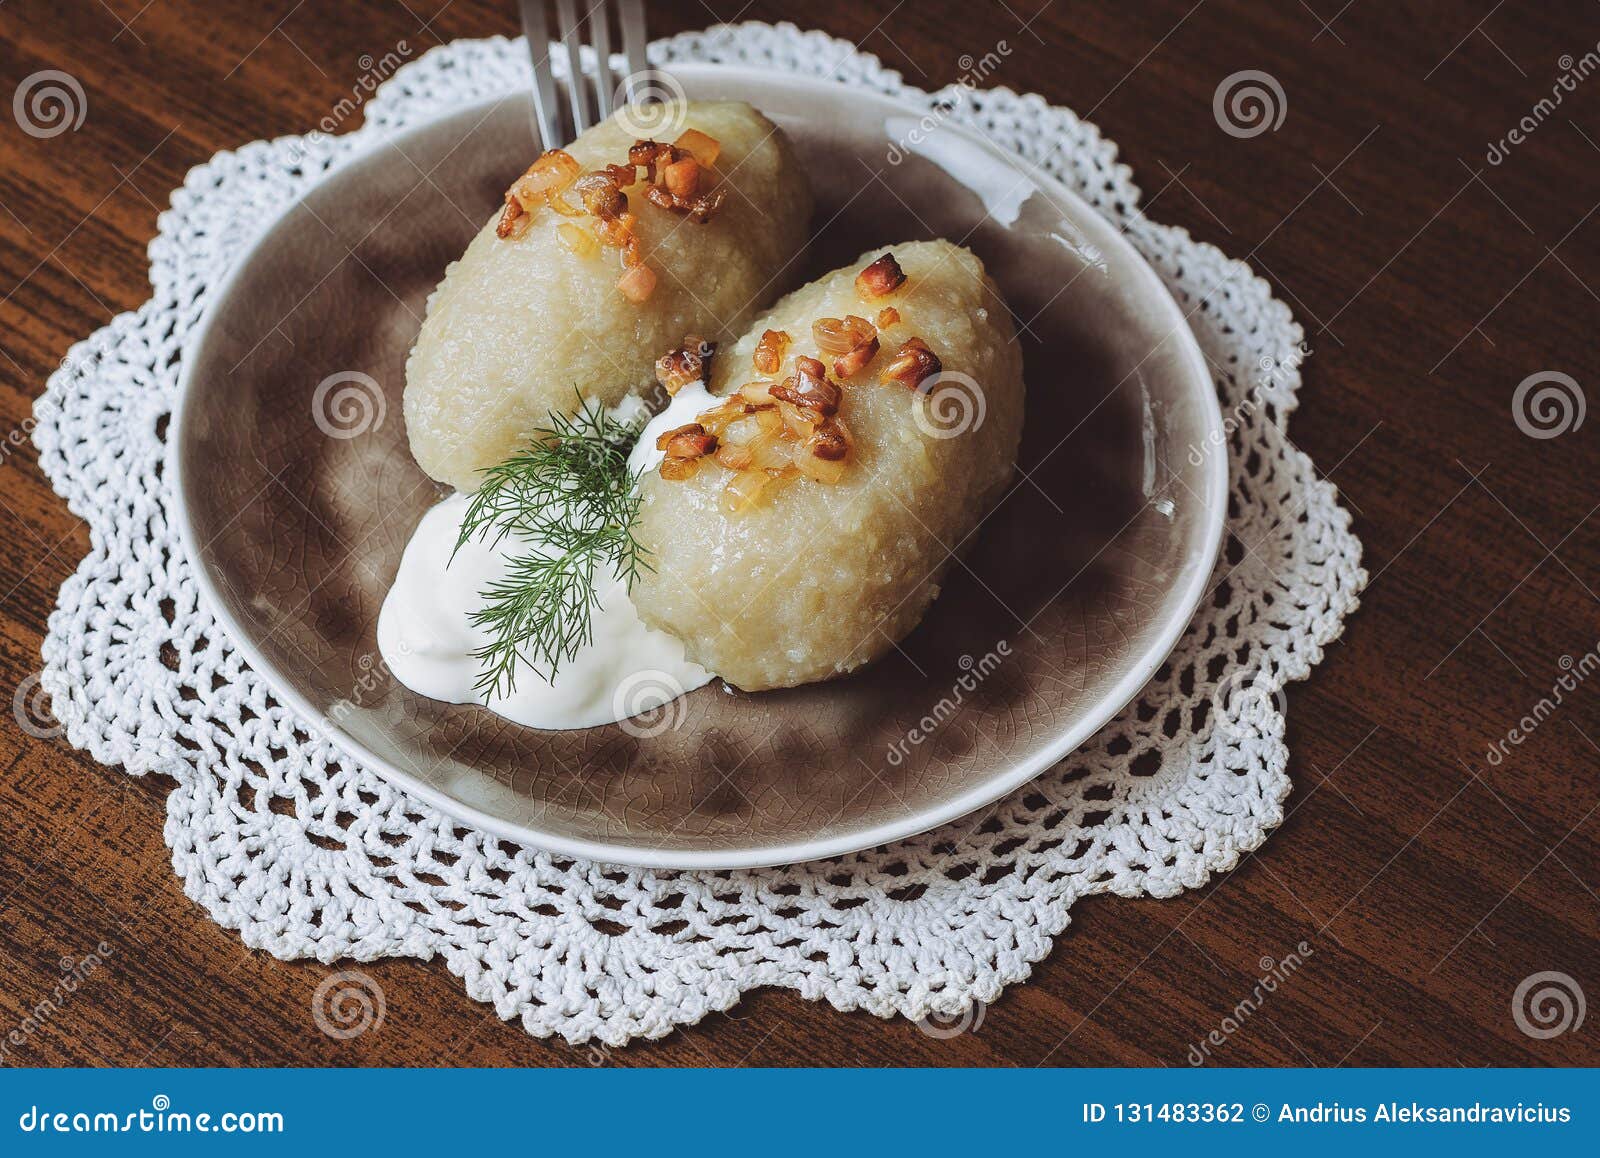 Traditional Lithuanian Dish Of Stuffed Potato Dumplings